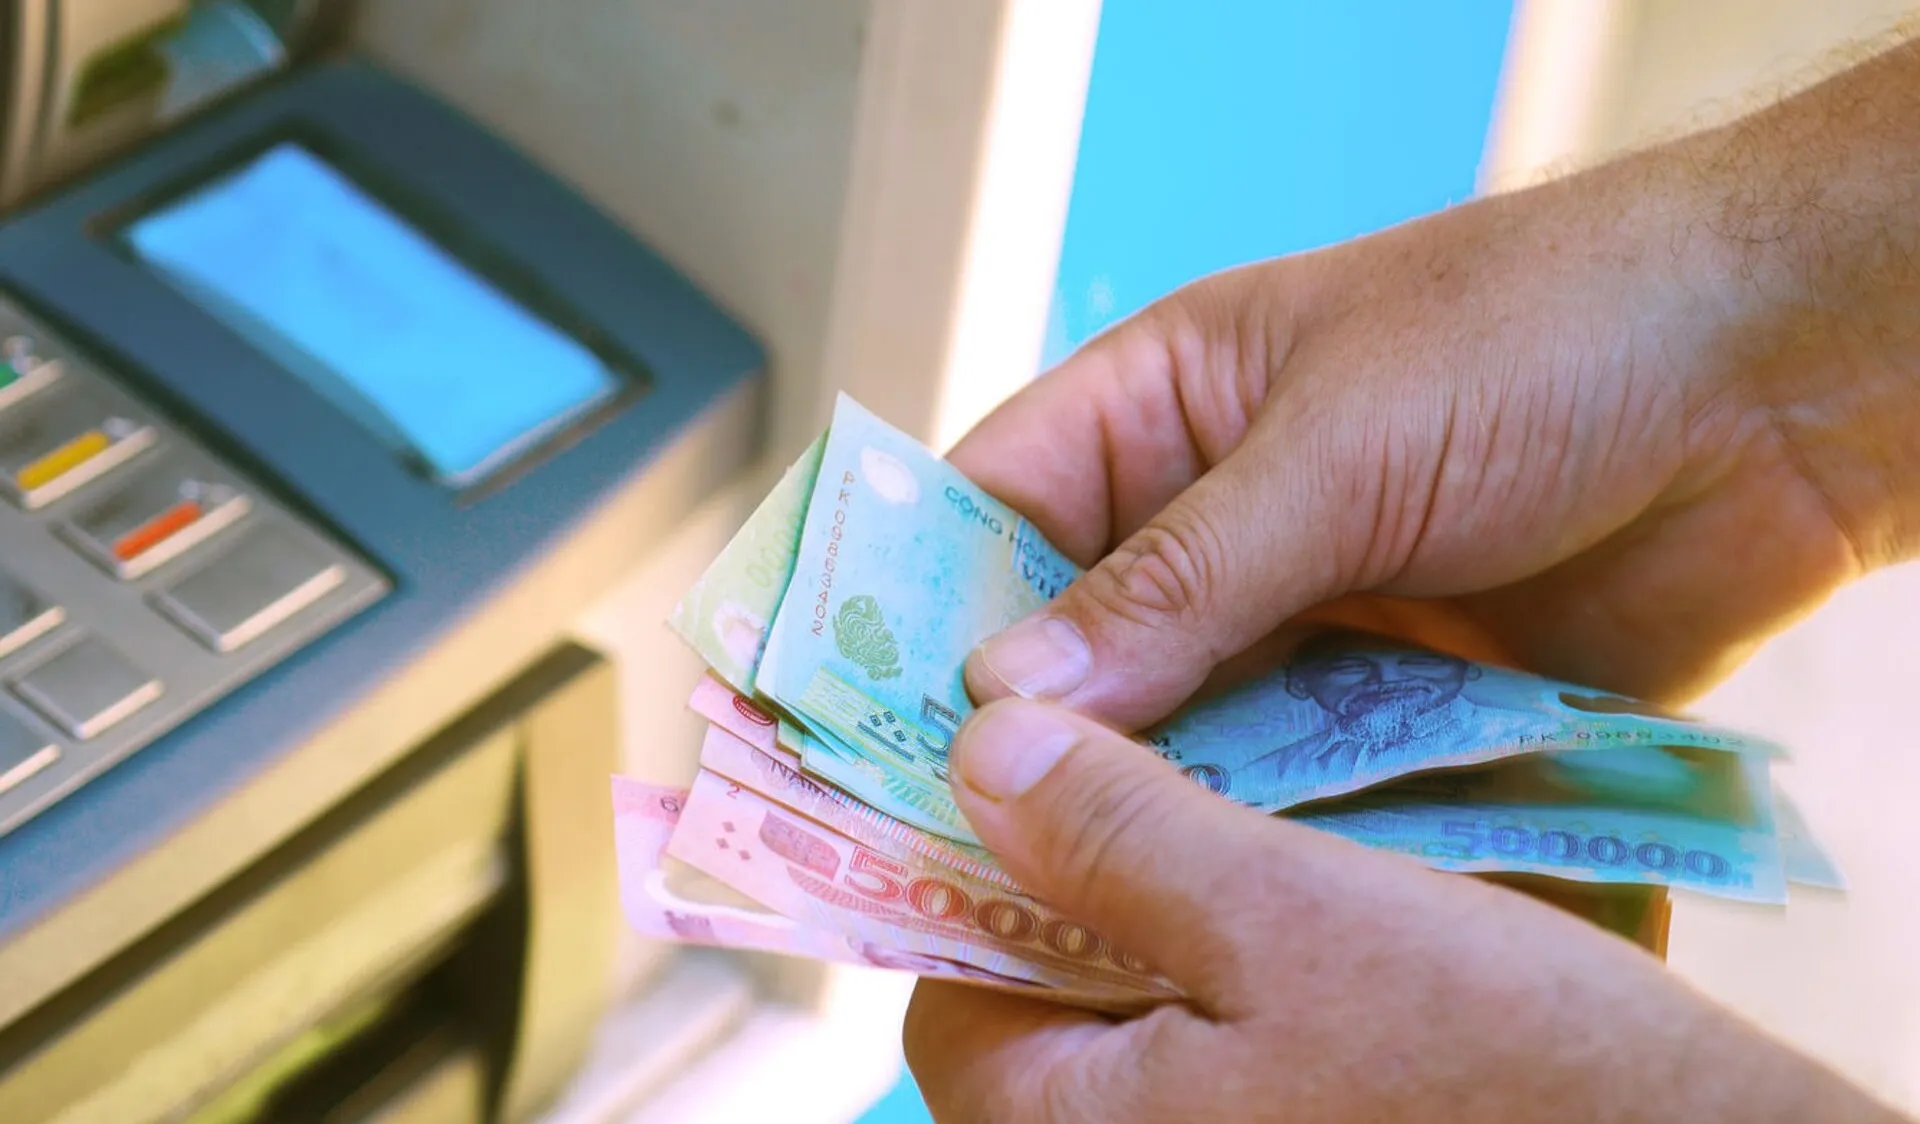 Nạp chi phí nhập thông tin tài khoản Ngân hàng quân đội MB Bank bên trên cây ATM